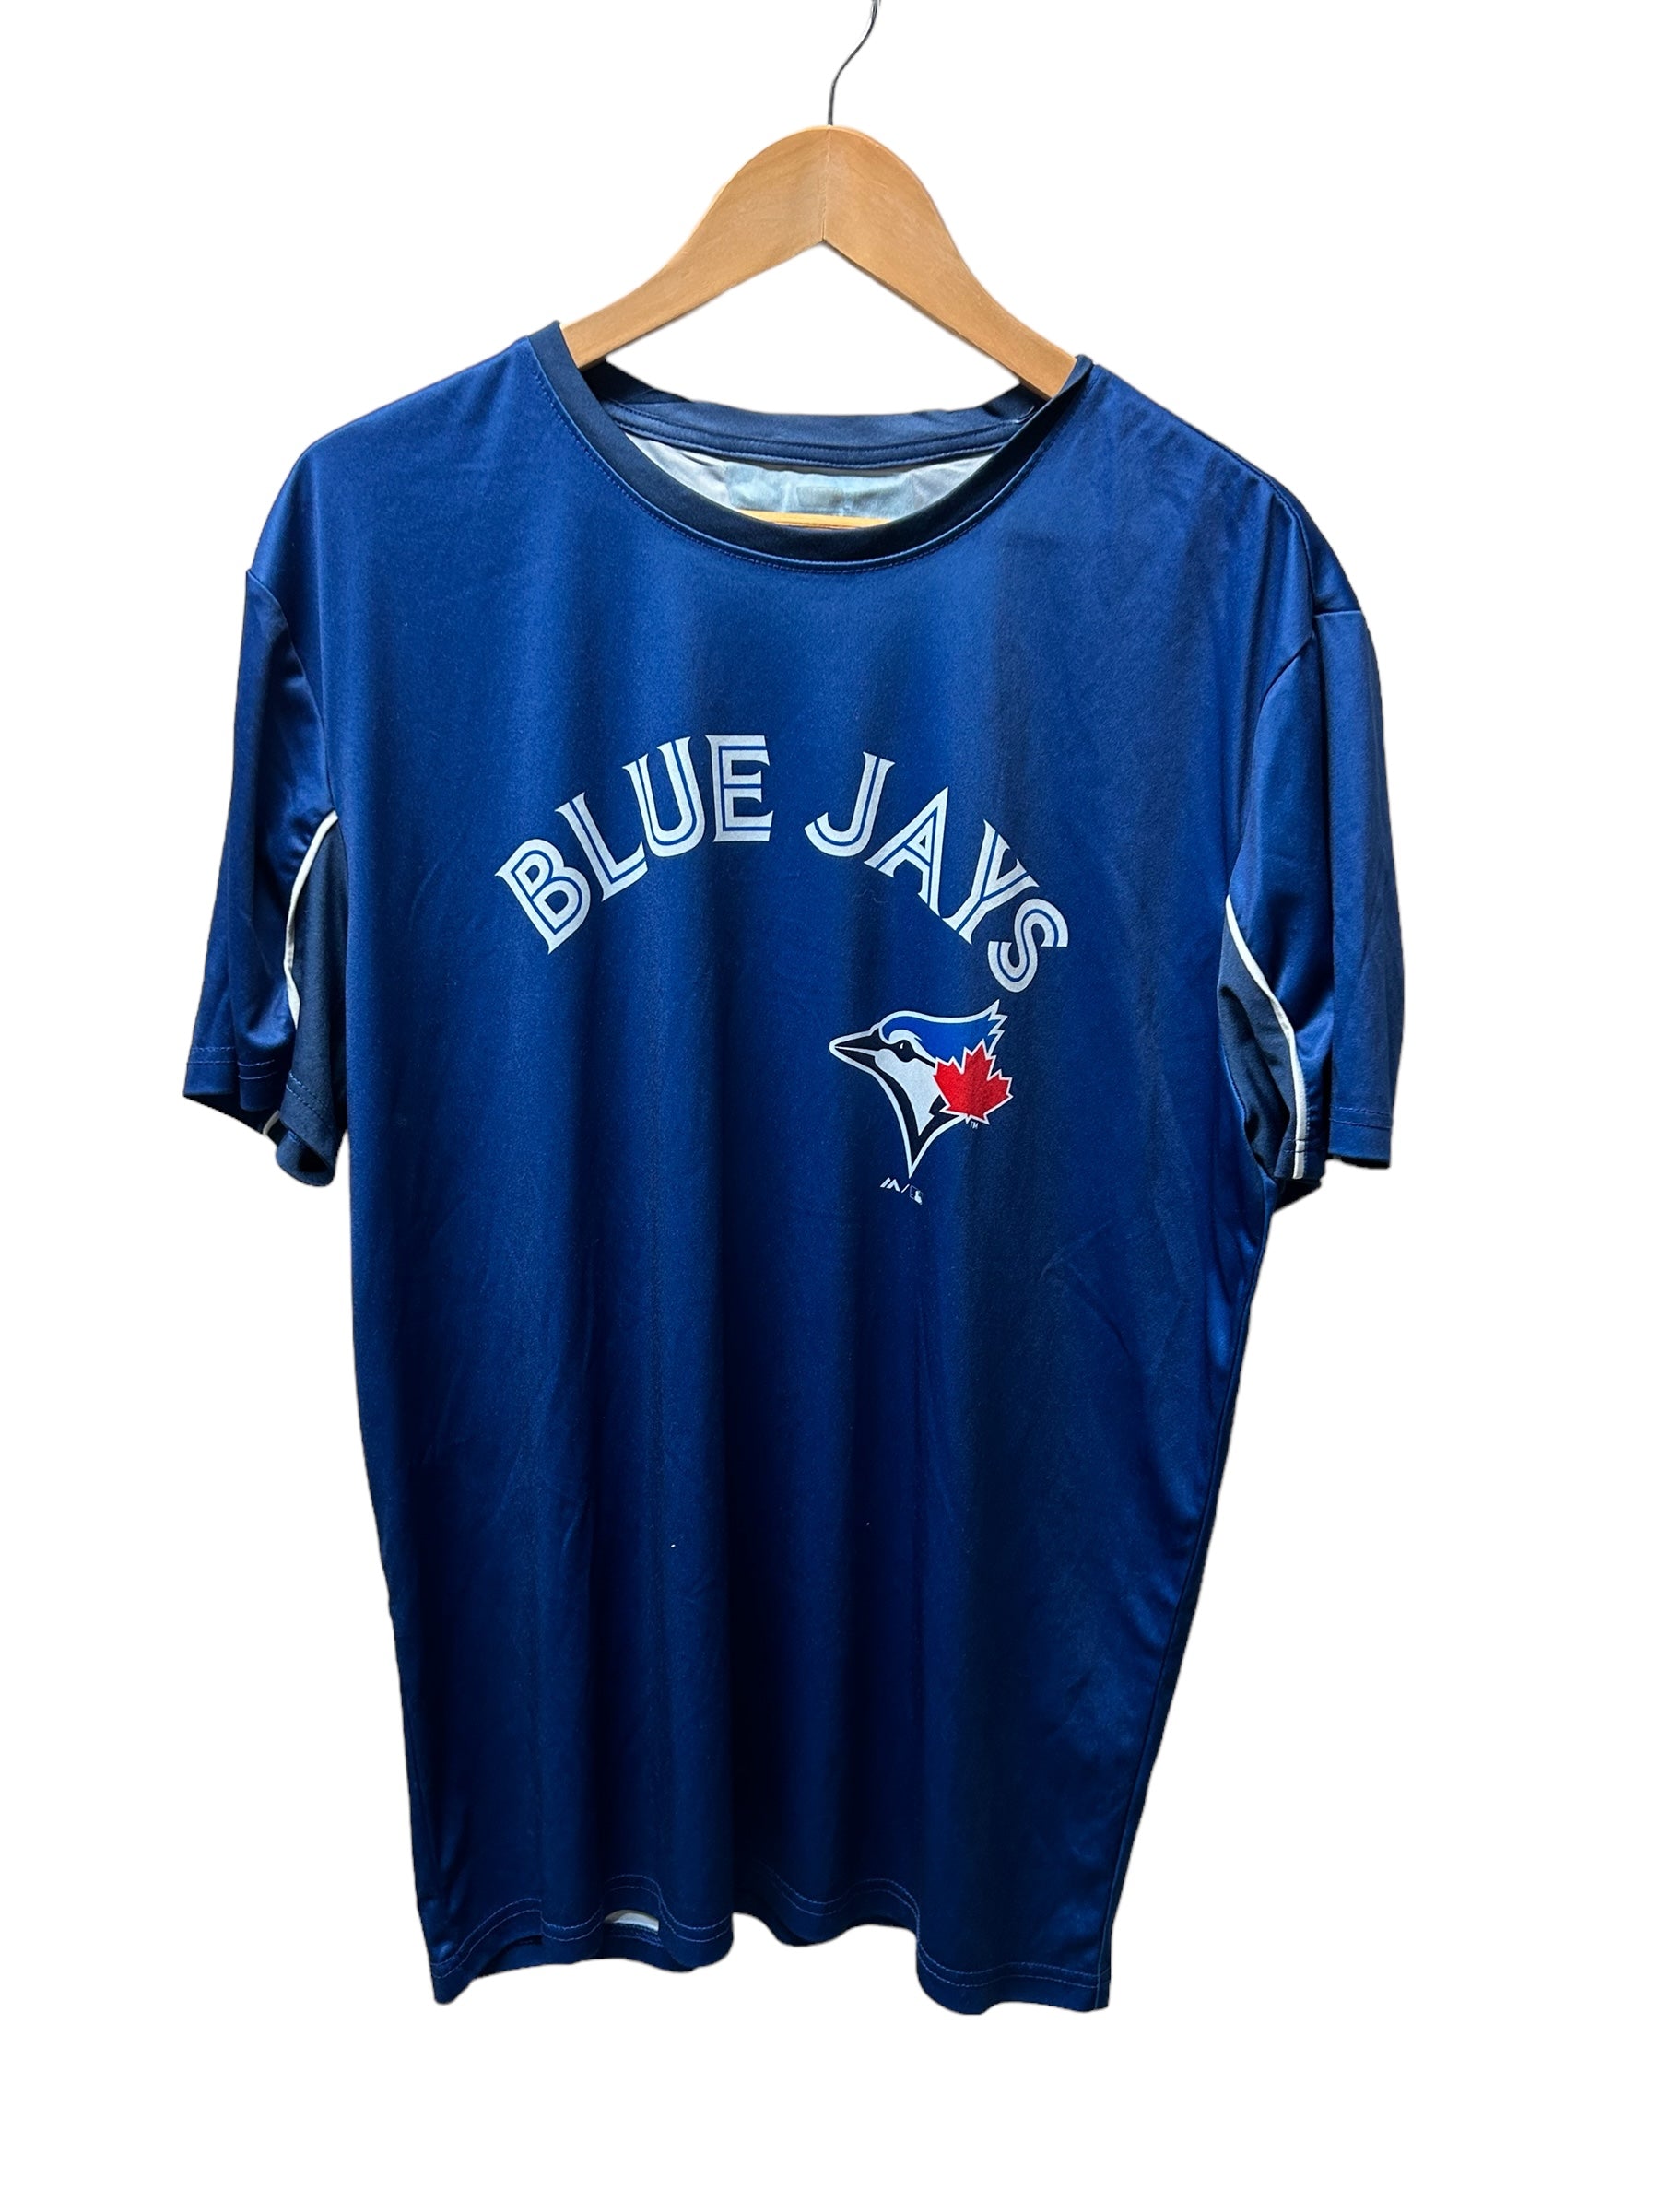 Blue Jays Shirt (L)